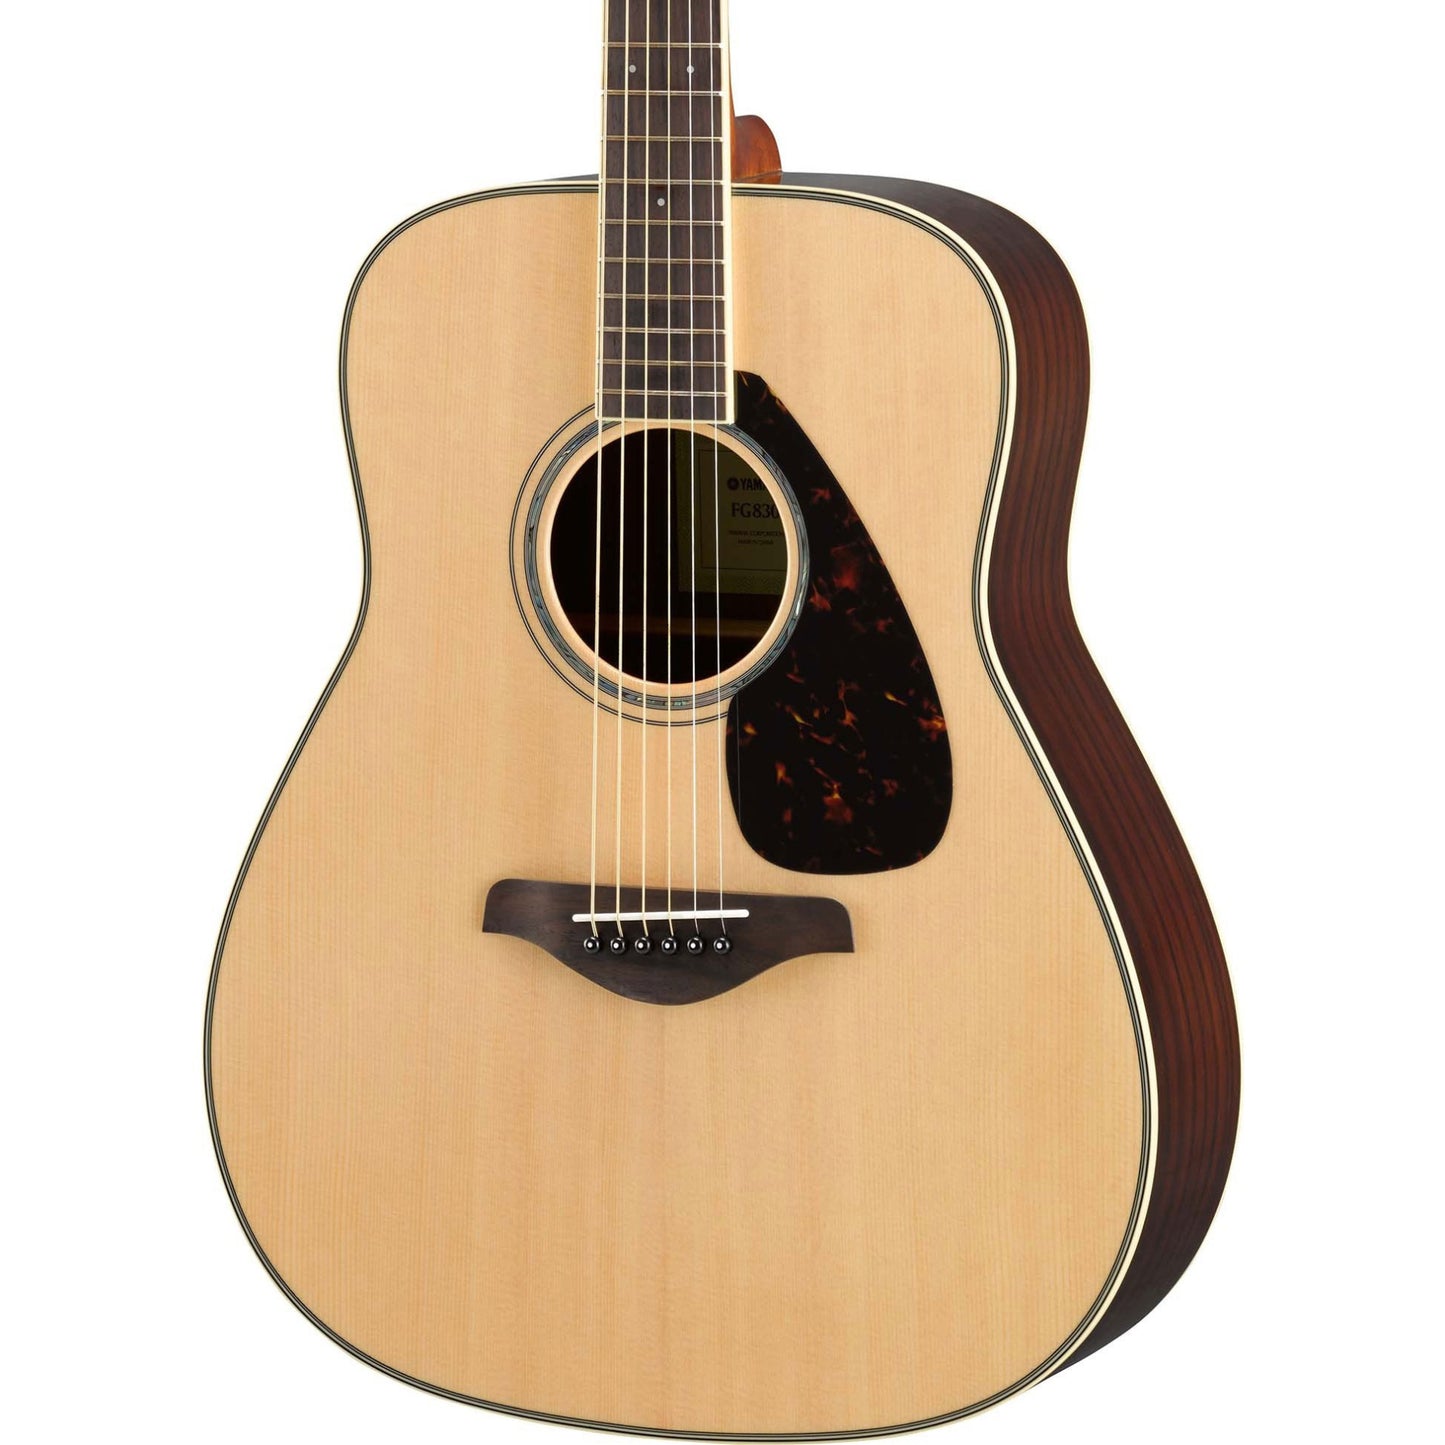 Yamaha FG830 Solid Top Acoustic Guitar, Natural